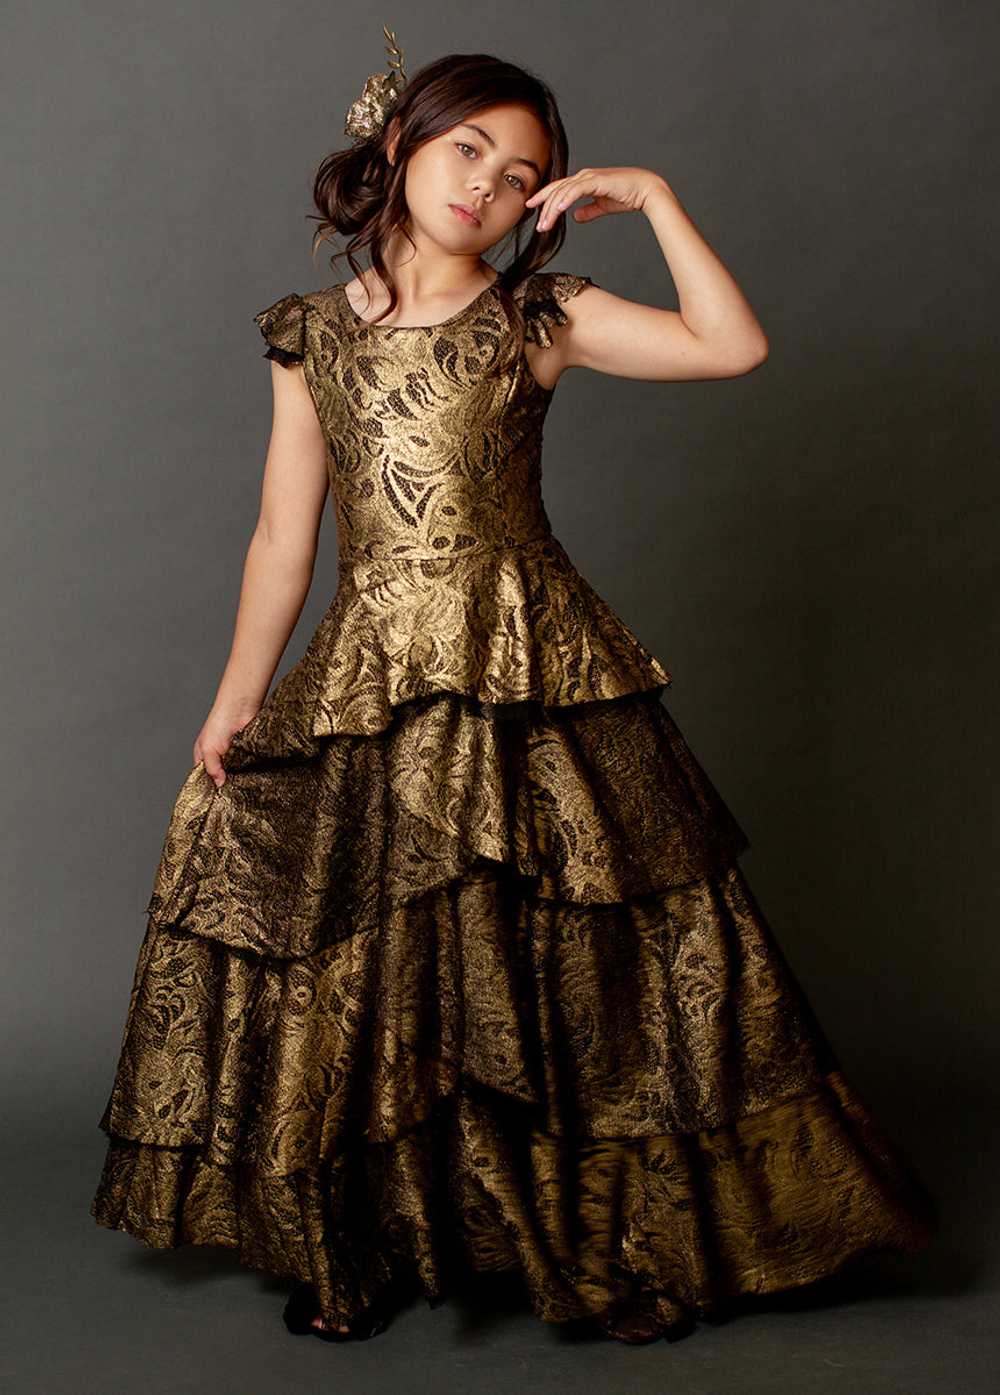 Joyfolie Azalea Dress in Gold Lace - image 5